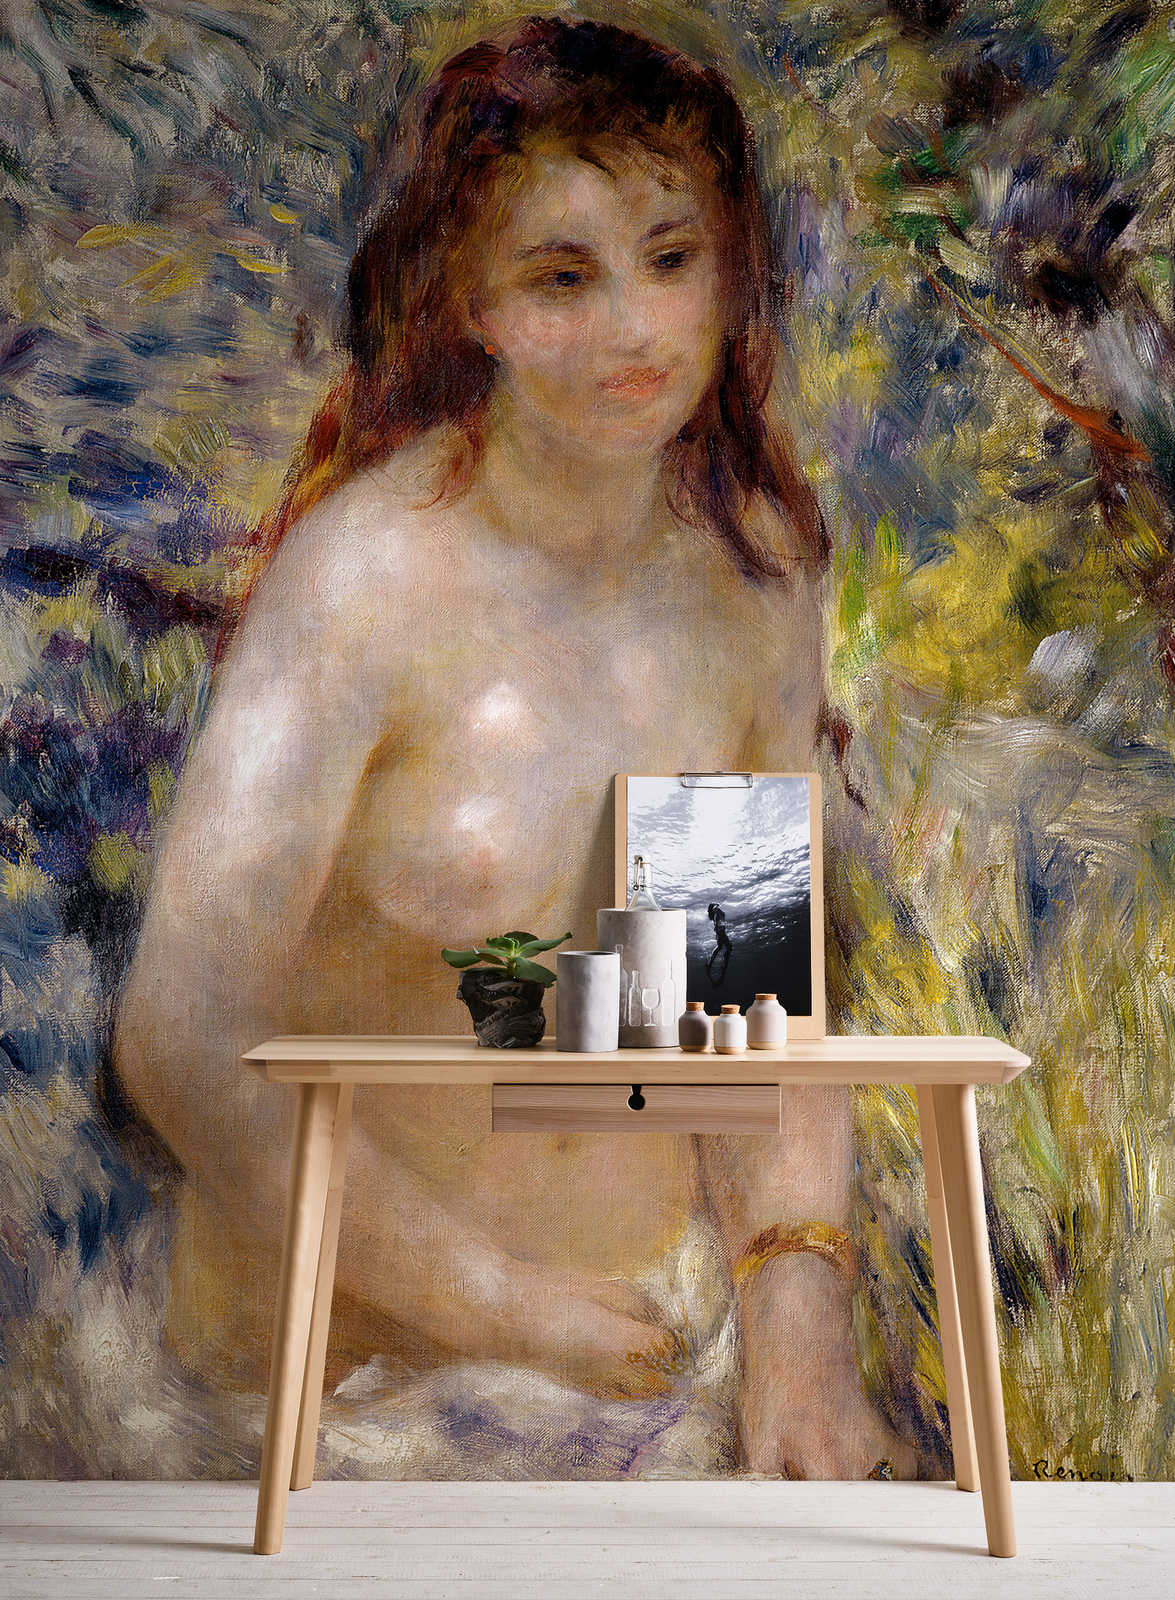             Mural "Efecto de la luz del sol" de Pierre Auguste Renoir
        